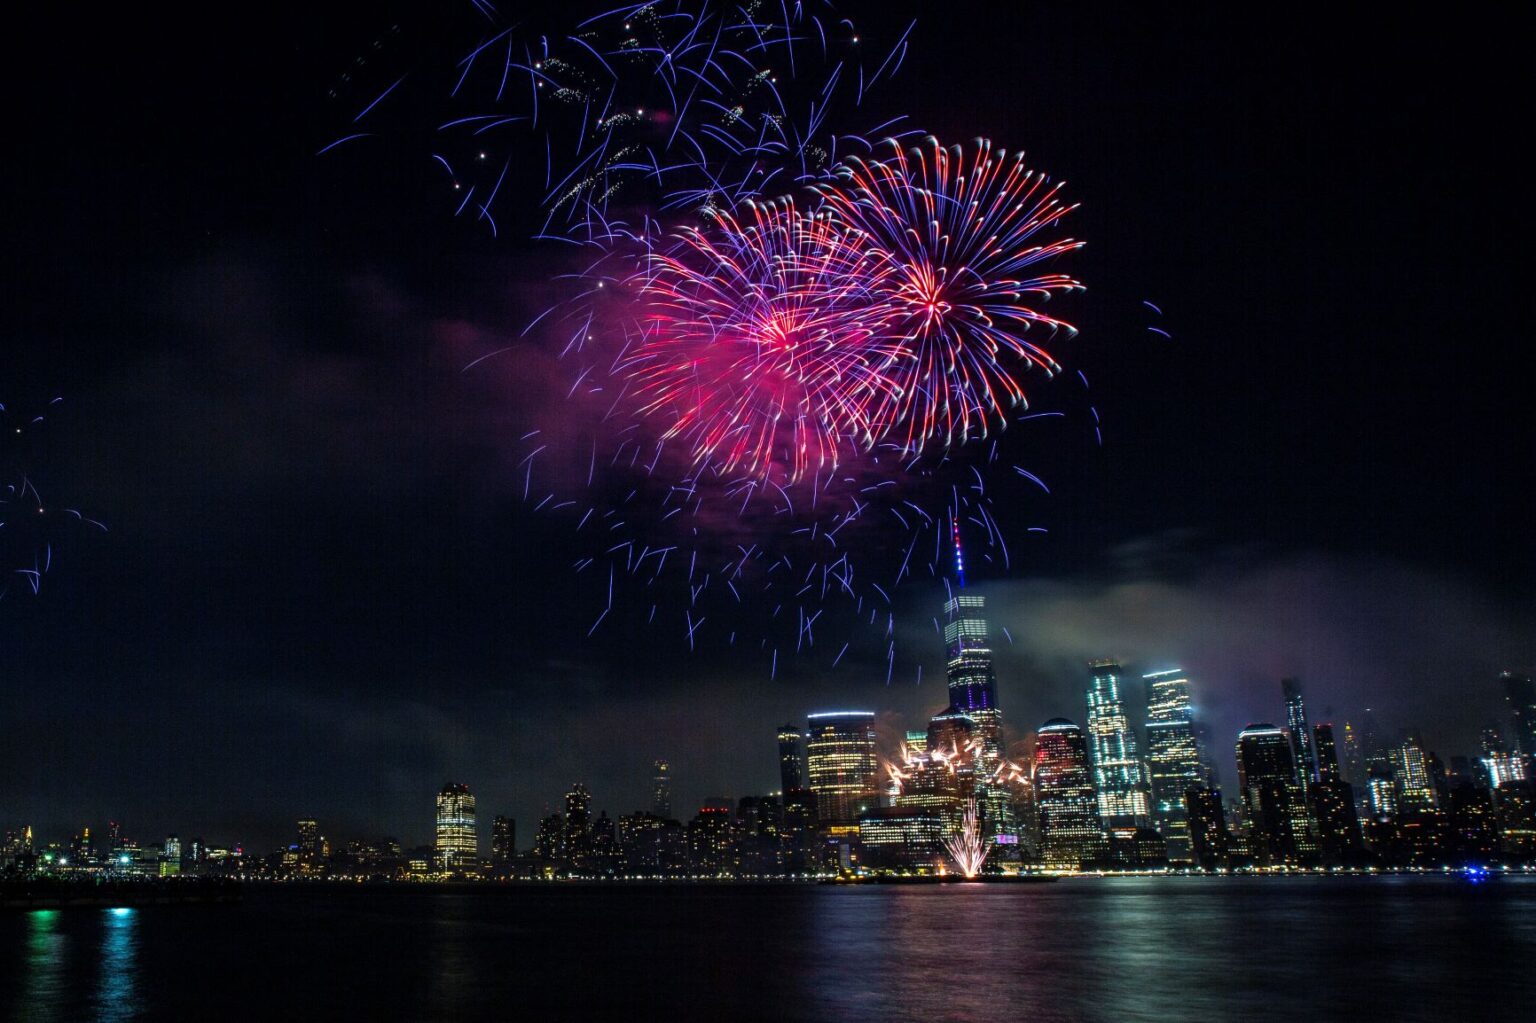 July 4th fireworks celebration returns to Jersey City! Jersey City